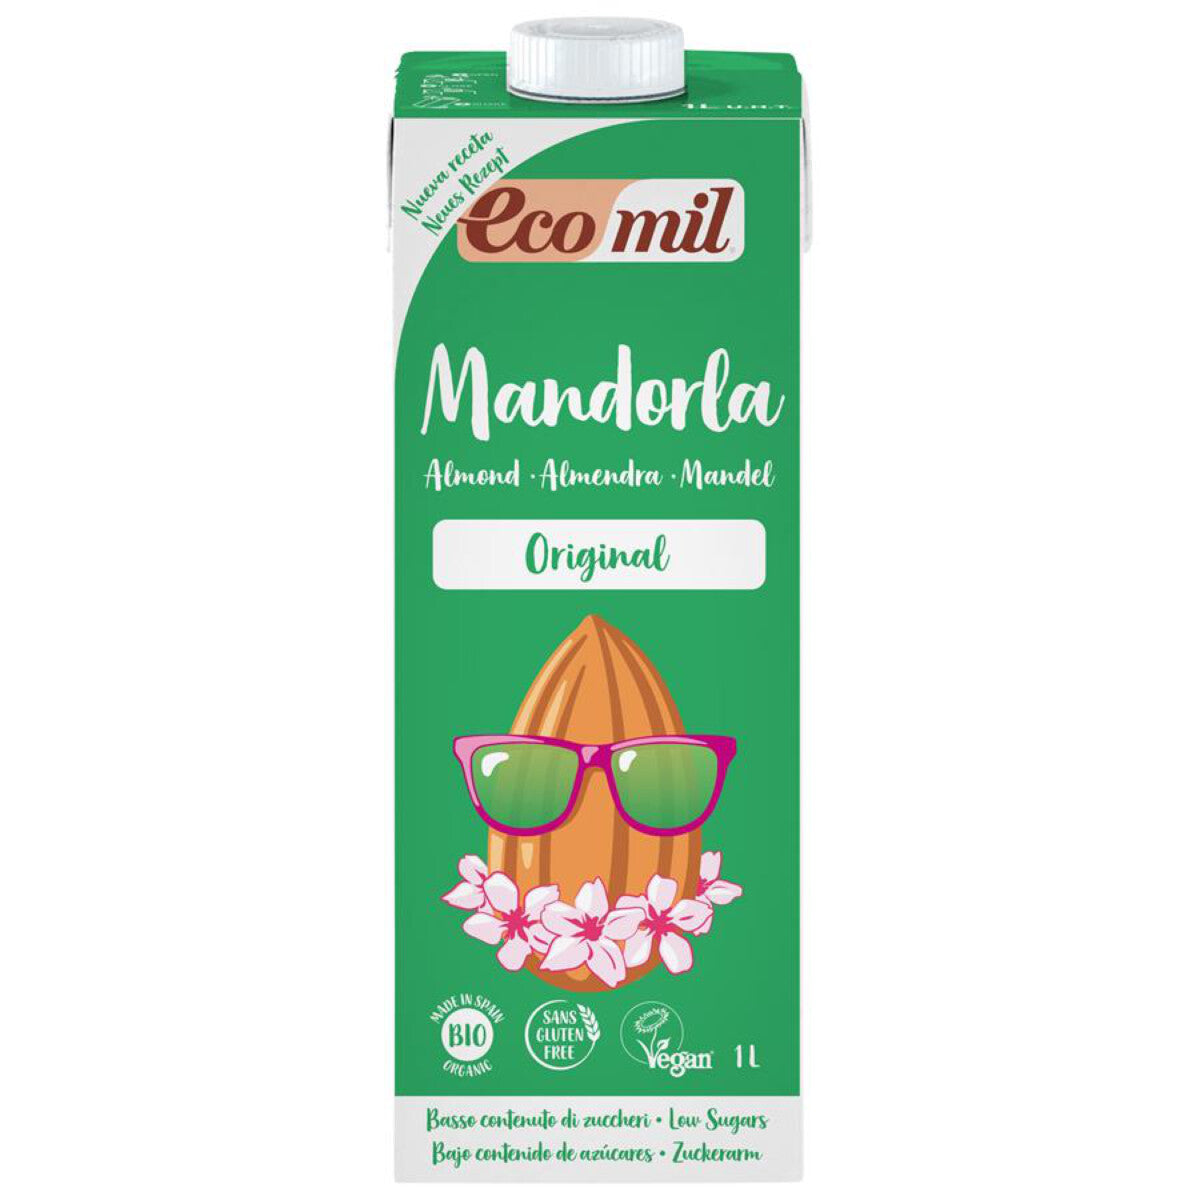 ECOMIL Mandeldrink Original - 1 l